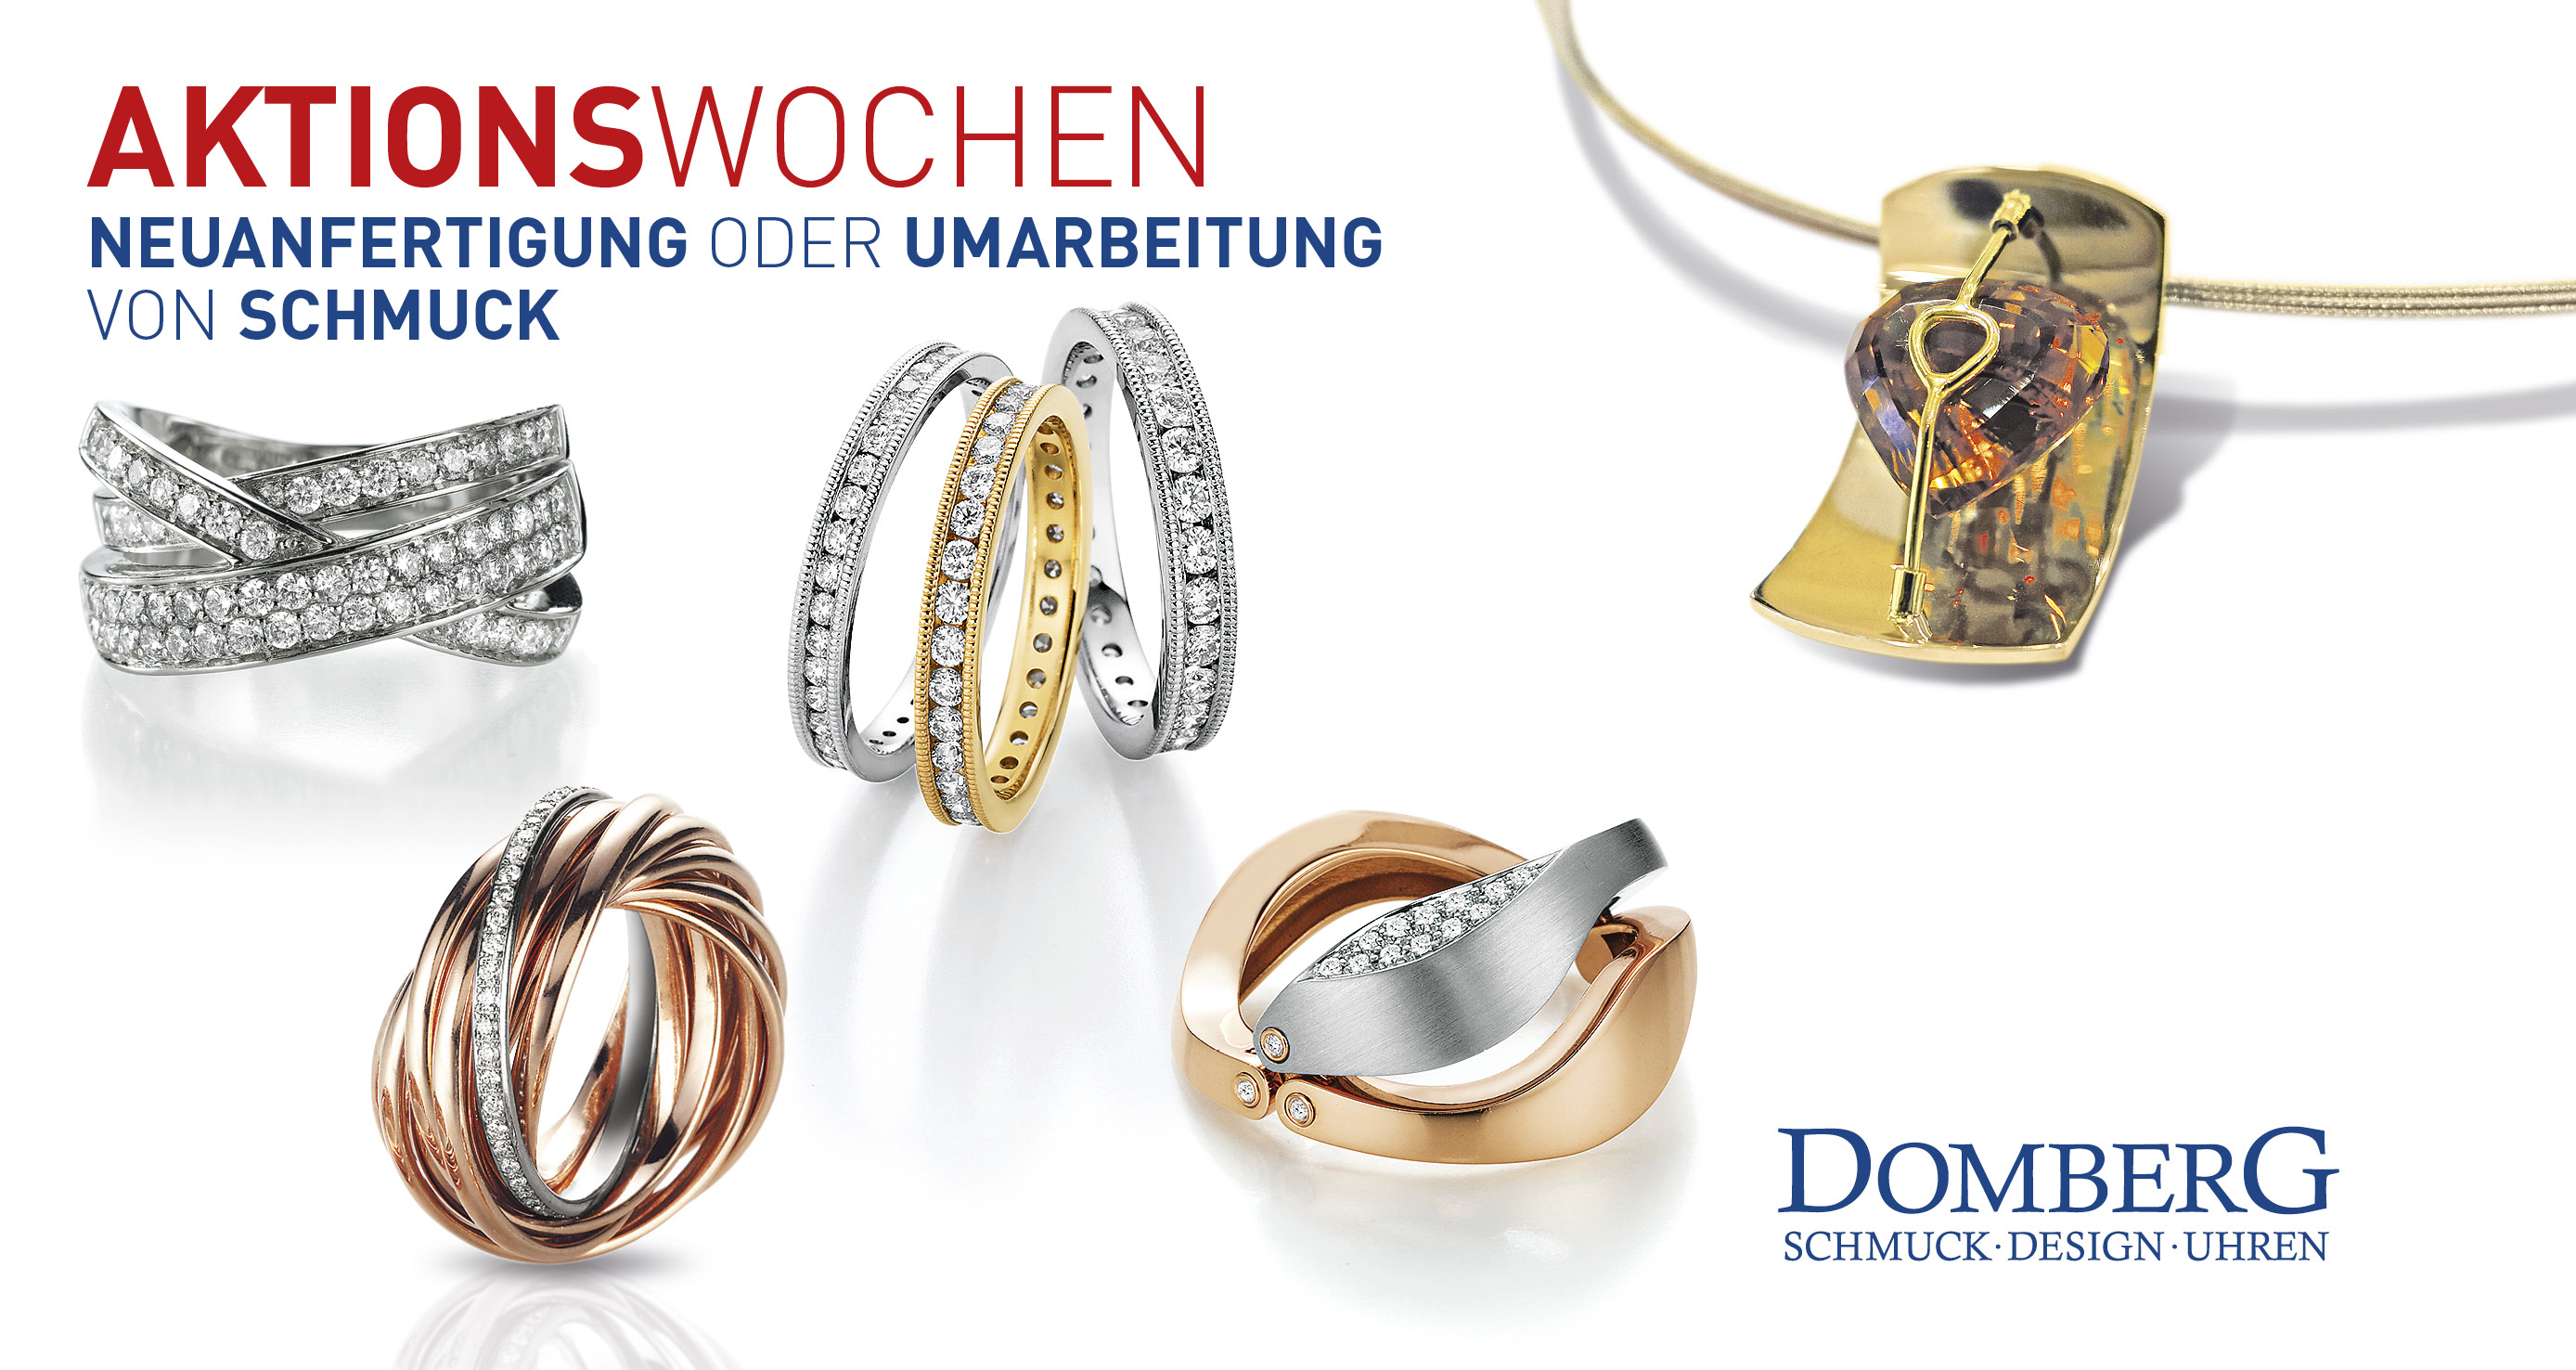 Aktionswochen bei Juwelier Domberg